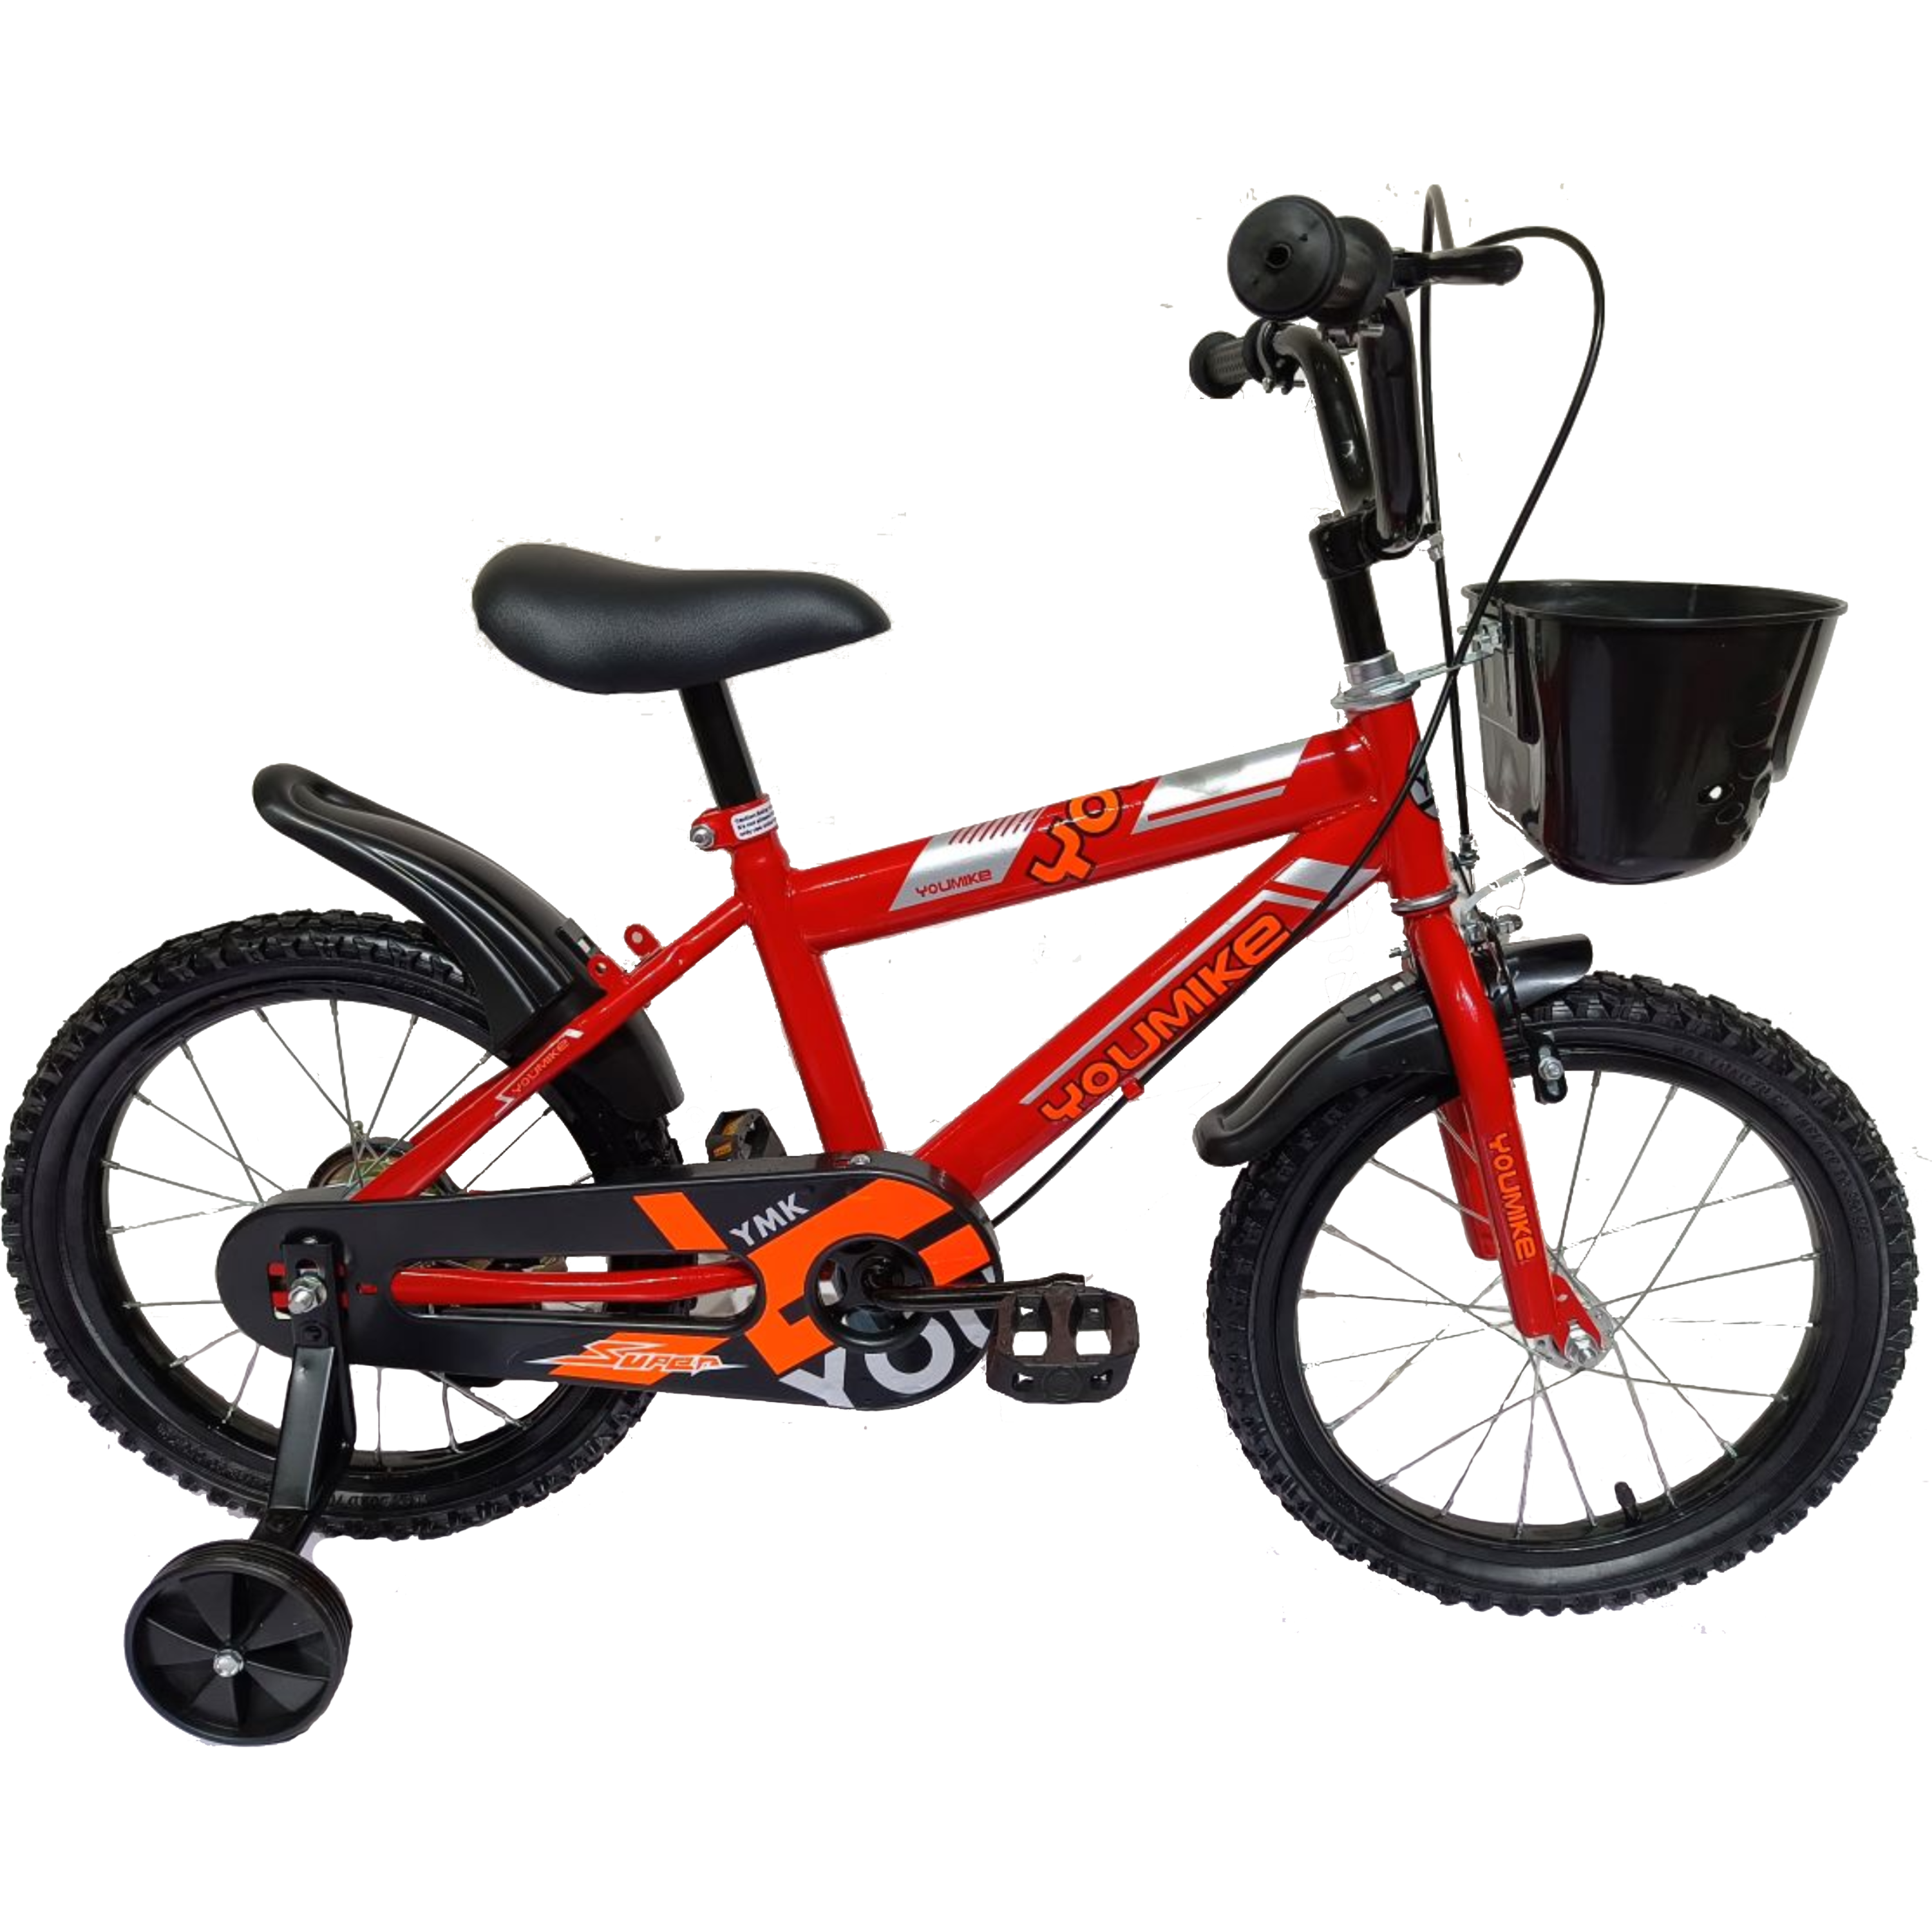 אופניים קלים לילדים 16 אינץ Rosso Italy RSM-1031 - צבע אדום שנה אחריות ע"י היבואן הרשמי